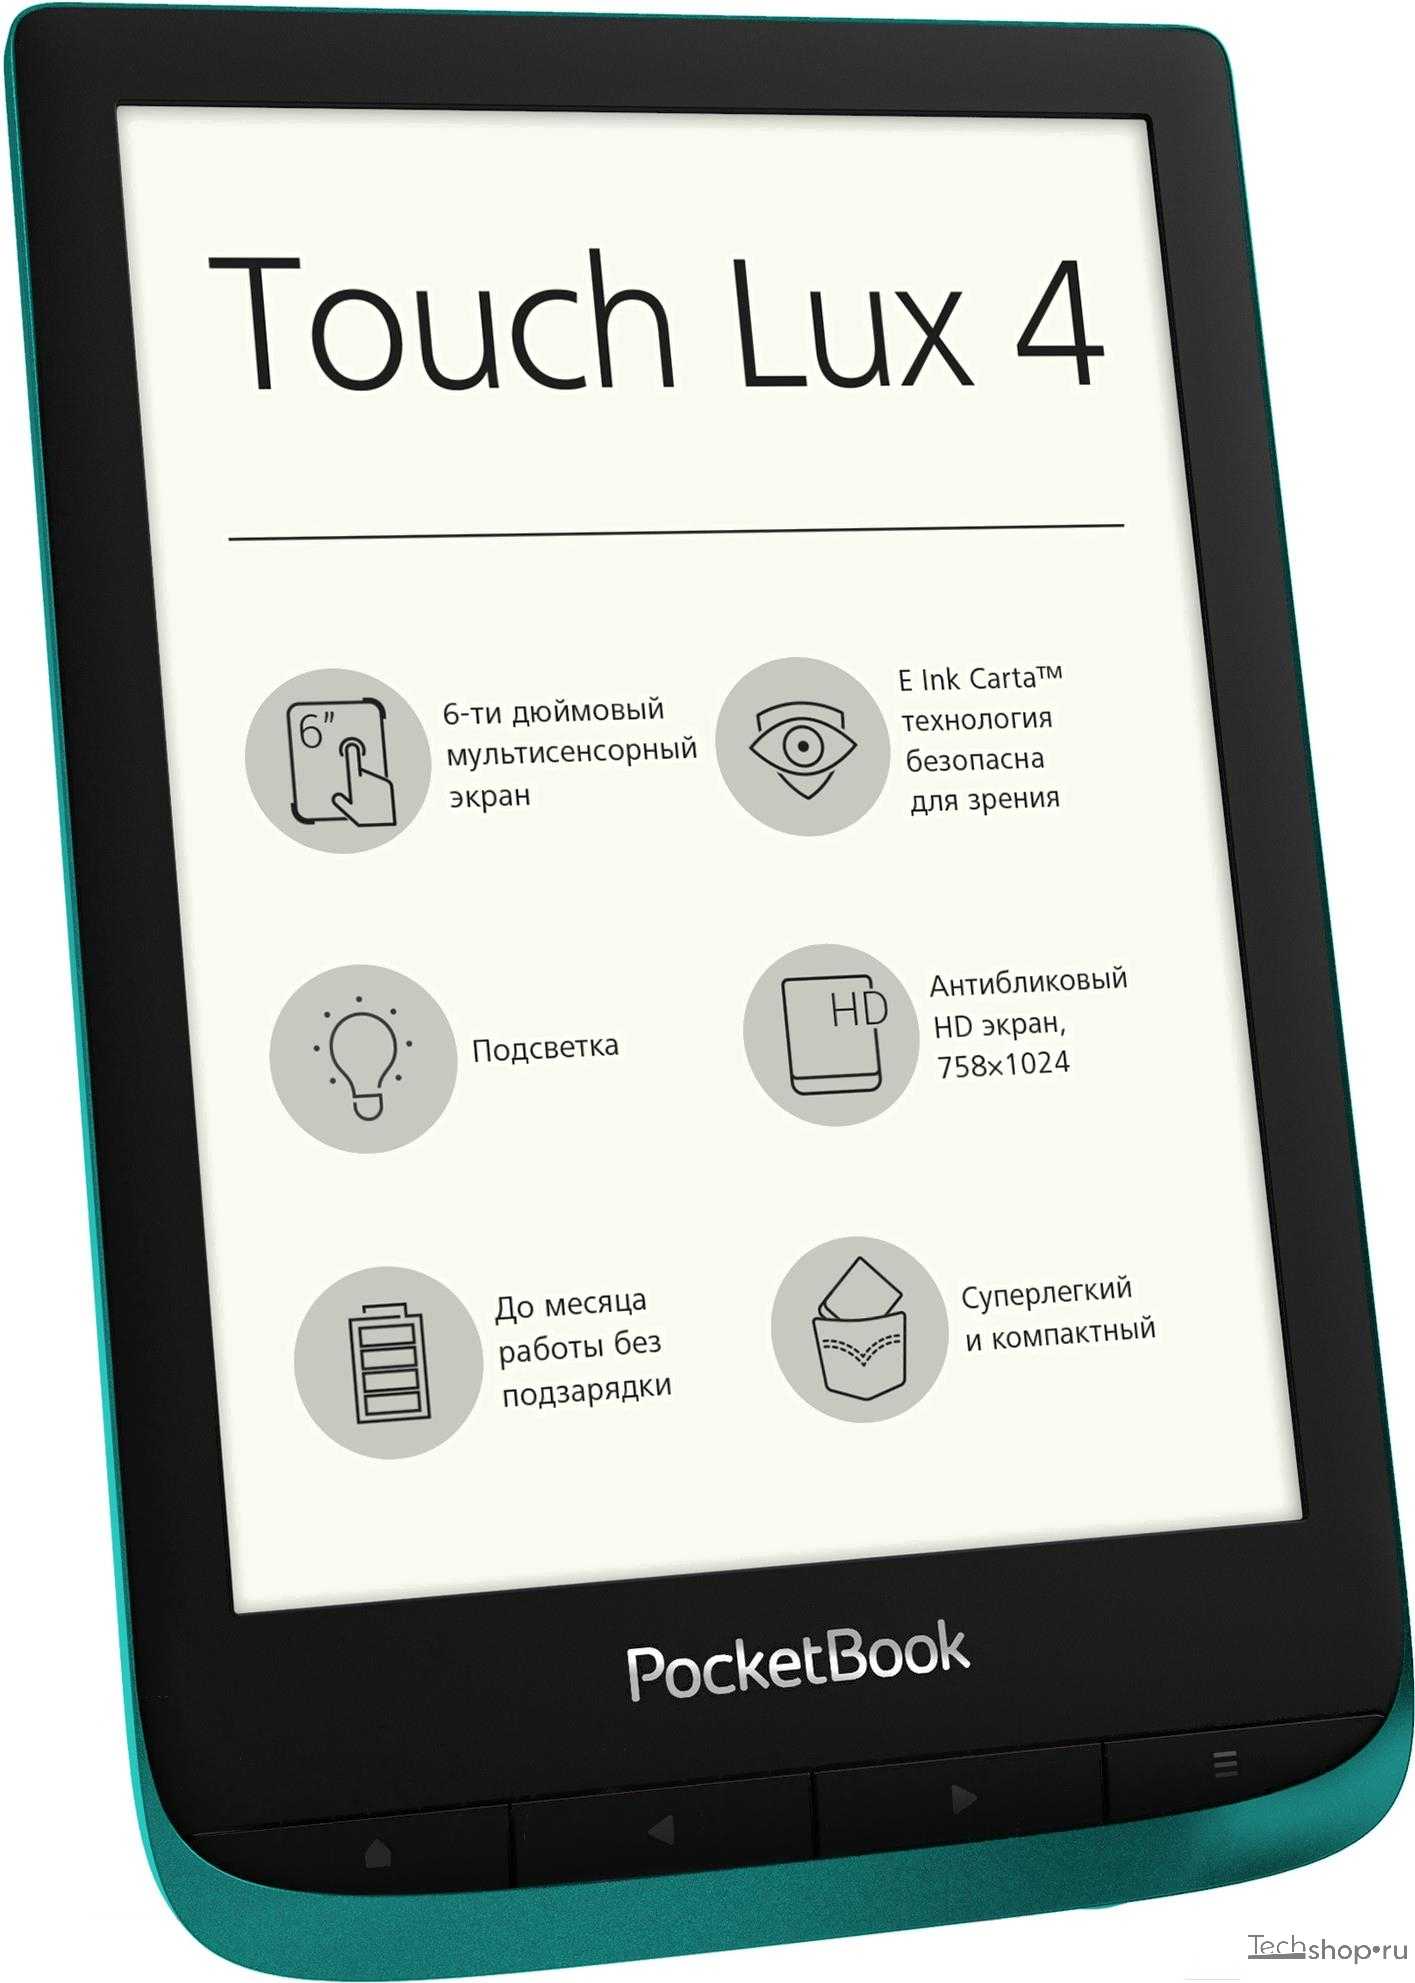 Pocketbook color lux 801 купить по акционной цене , отзывы и обзоры.